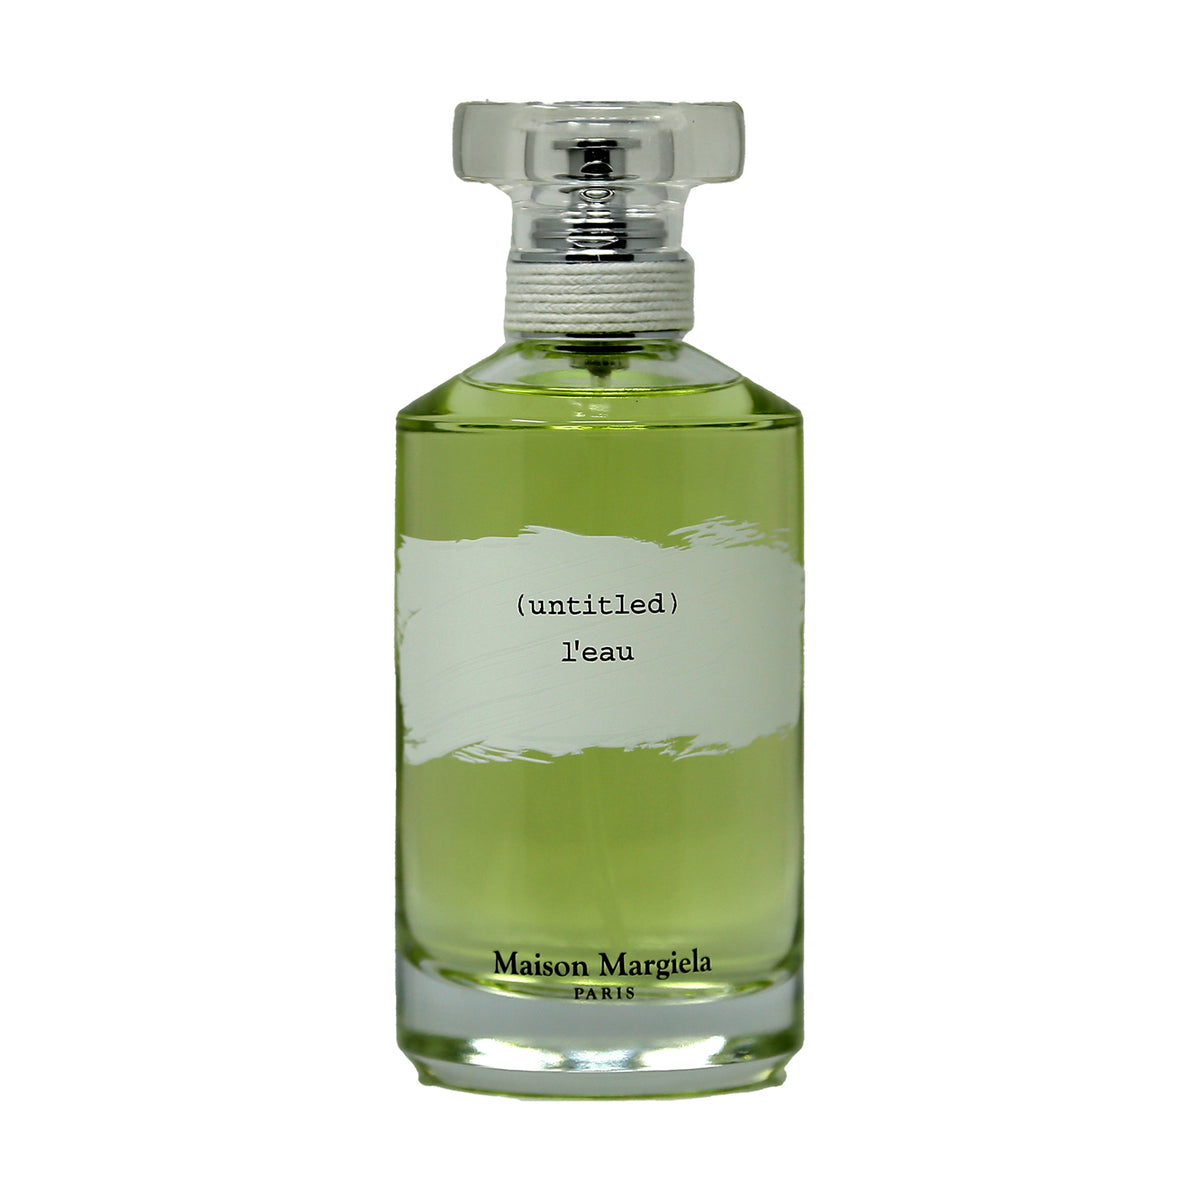 Finde sig i indsprøjte Lærerens dag Maison Margiela (Untitled) L'eau Eau de Toilette Unisex – DecantX Perfume &  Cologne Decant Fragrance Samples